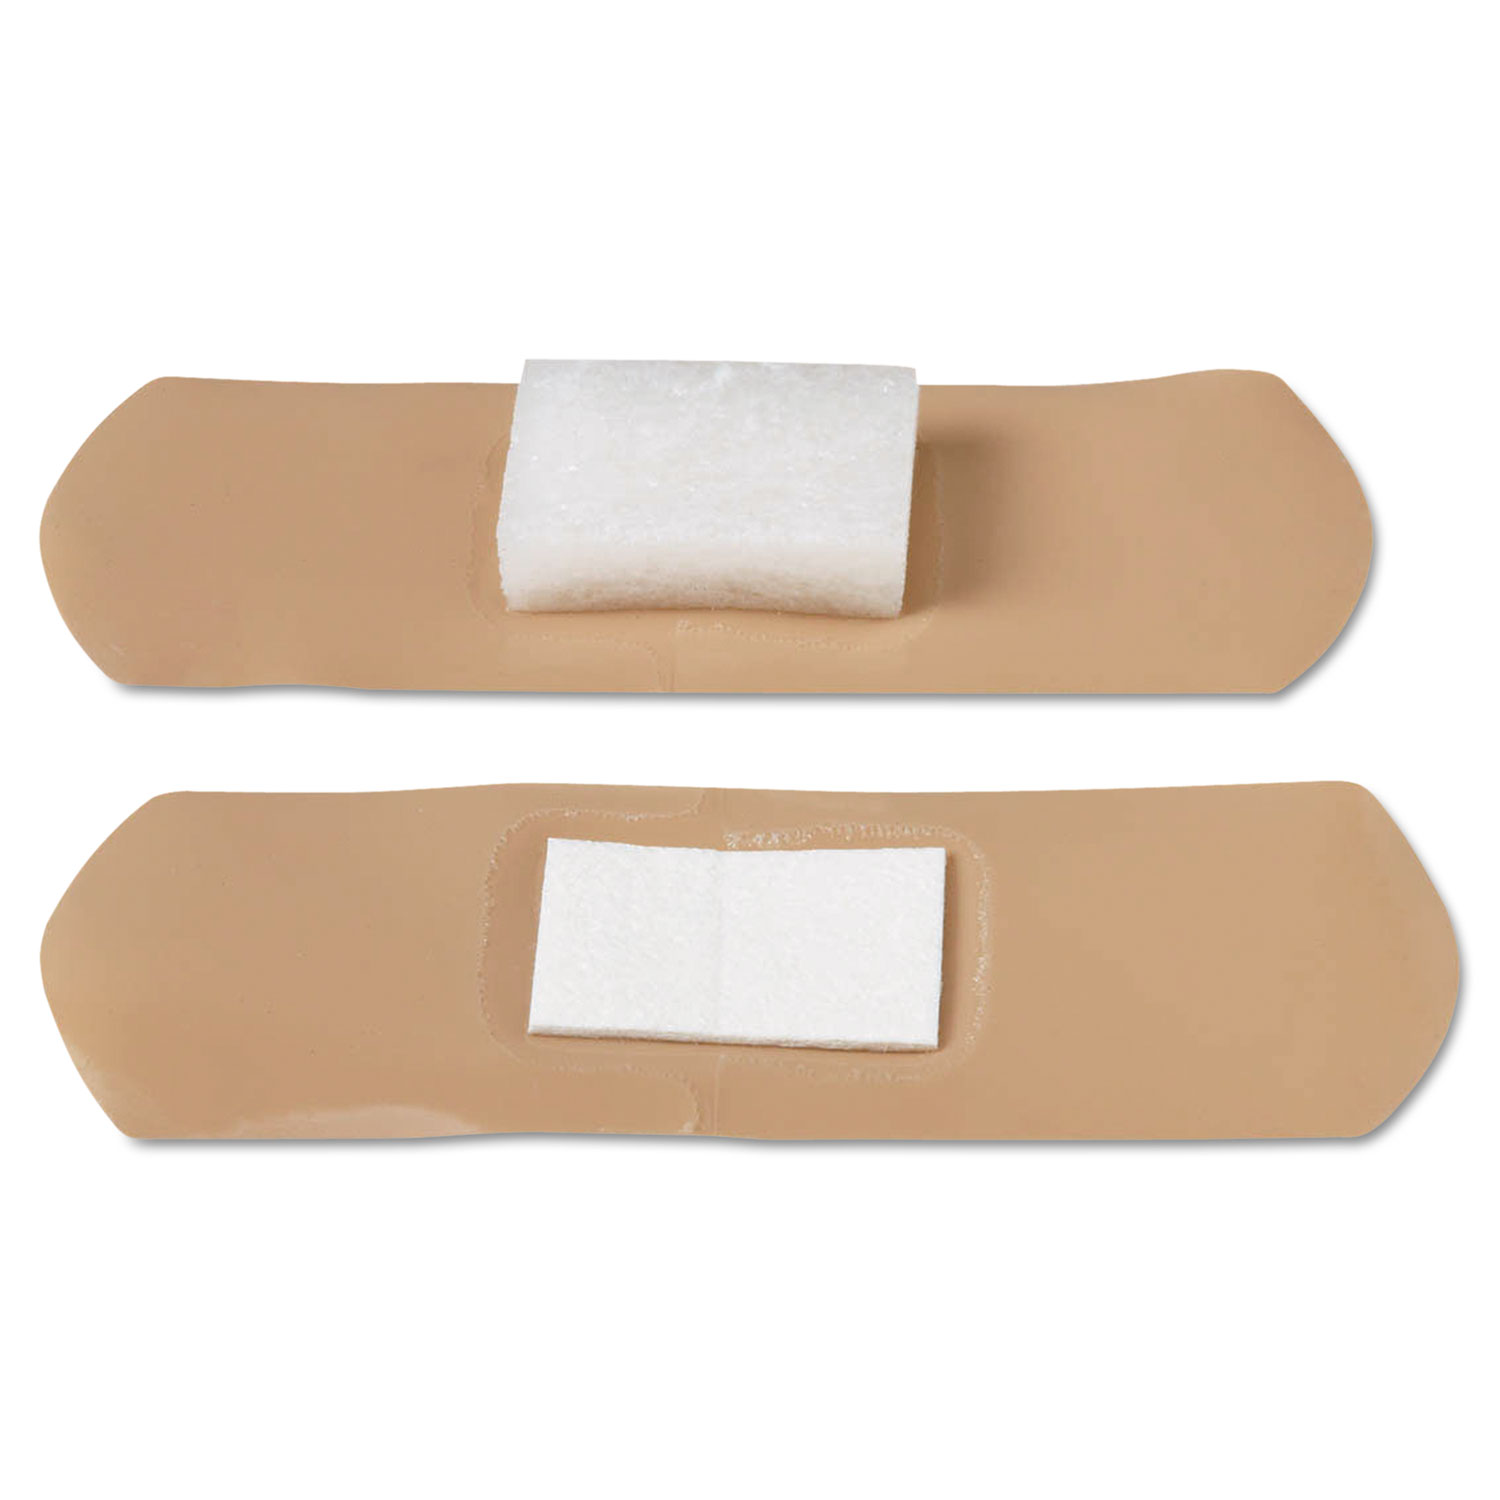 Pressure Adhesive Bandages, 2 3/4 x 1, 100/Box